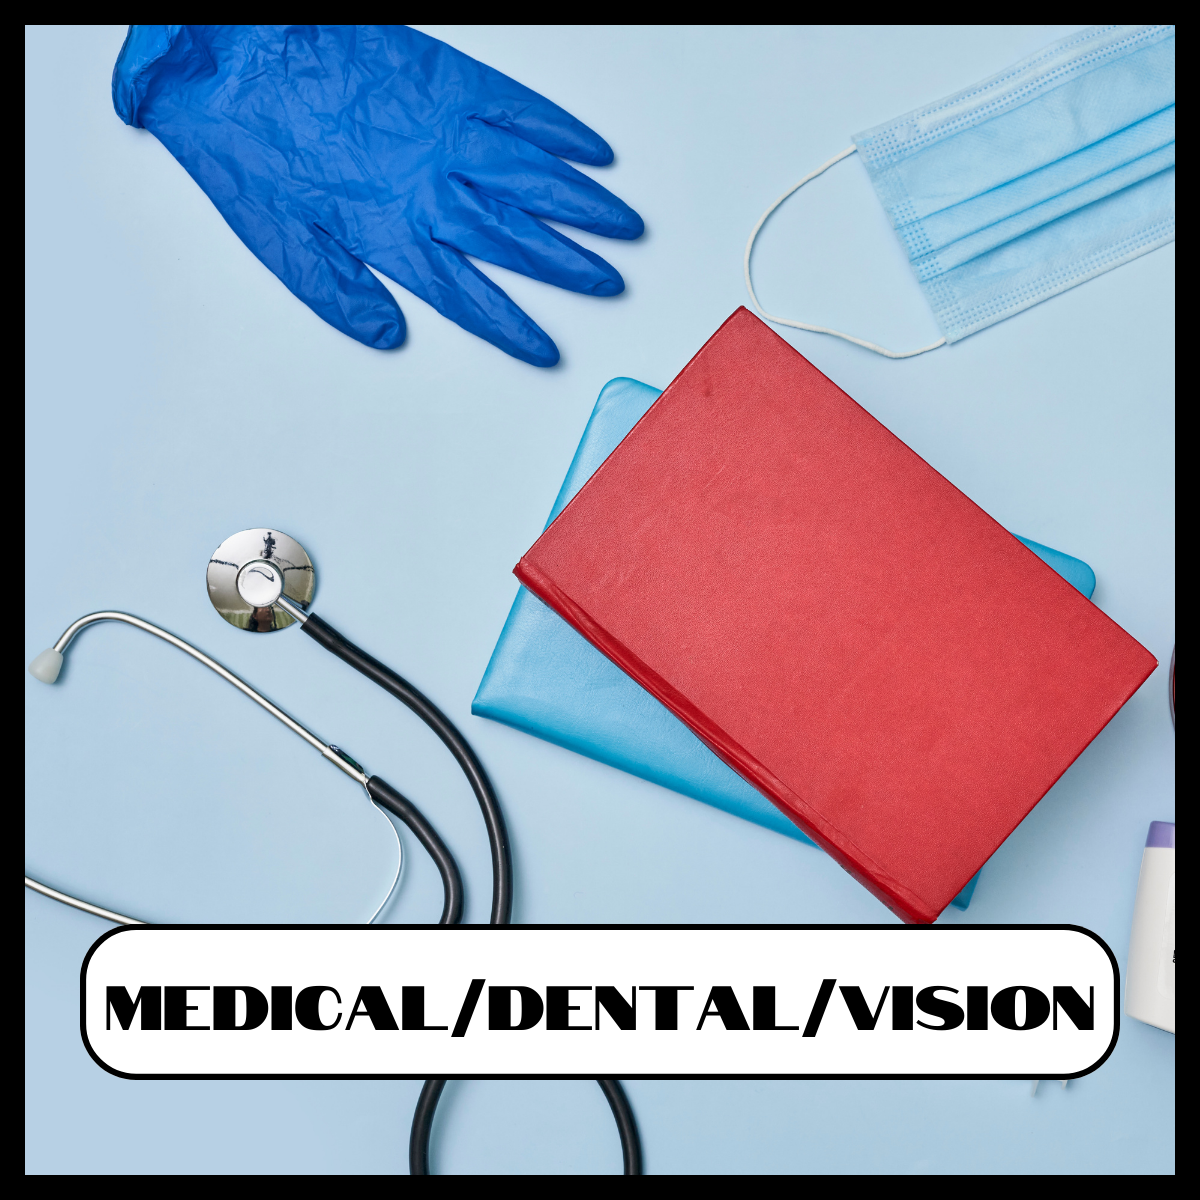 Medical Dental Vision Resources